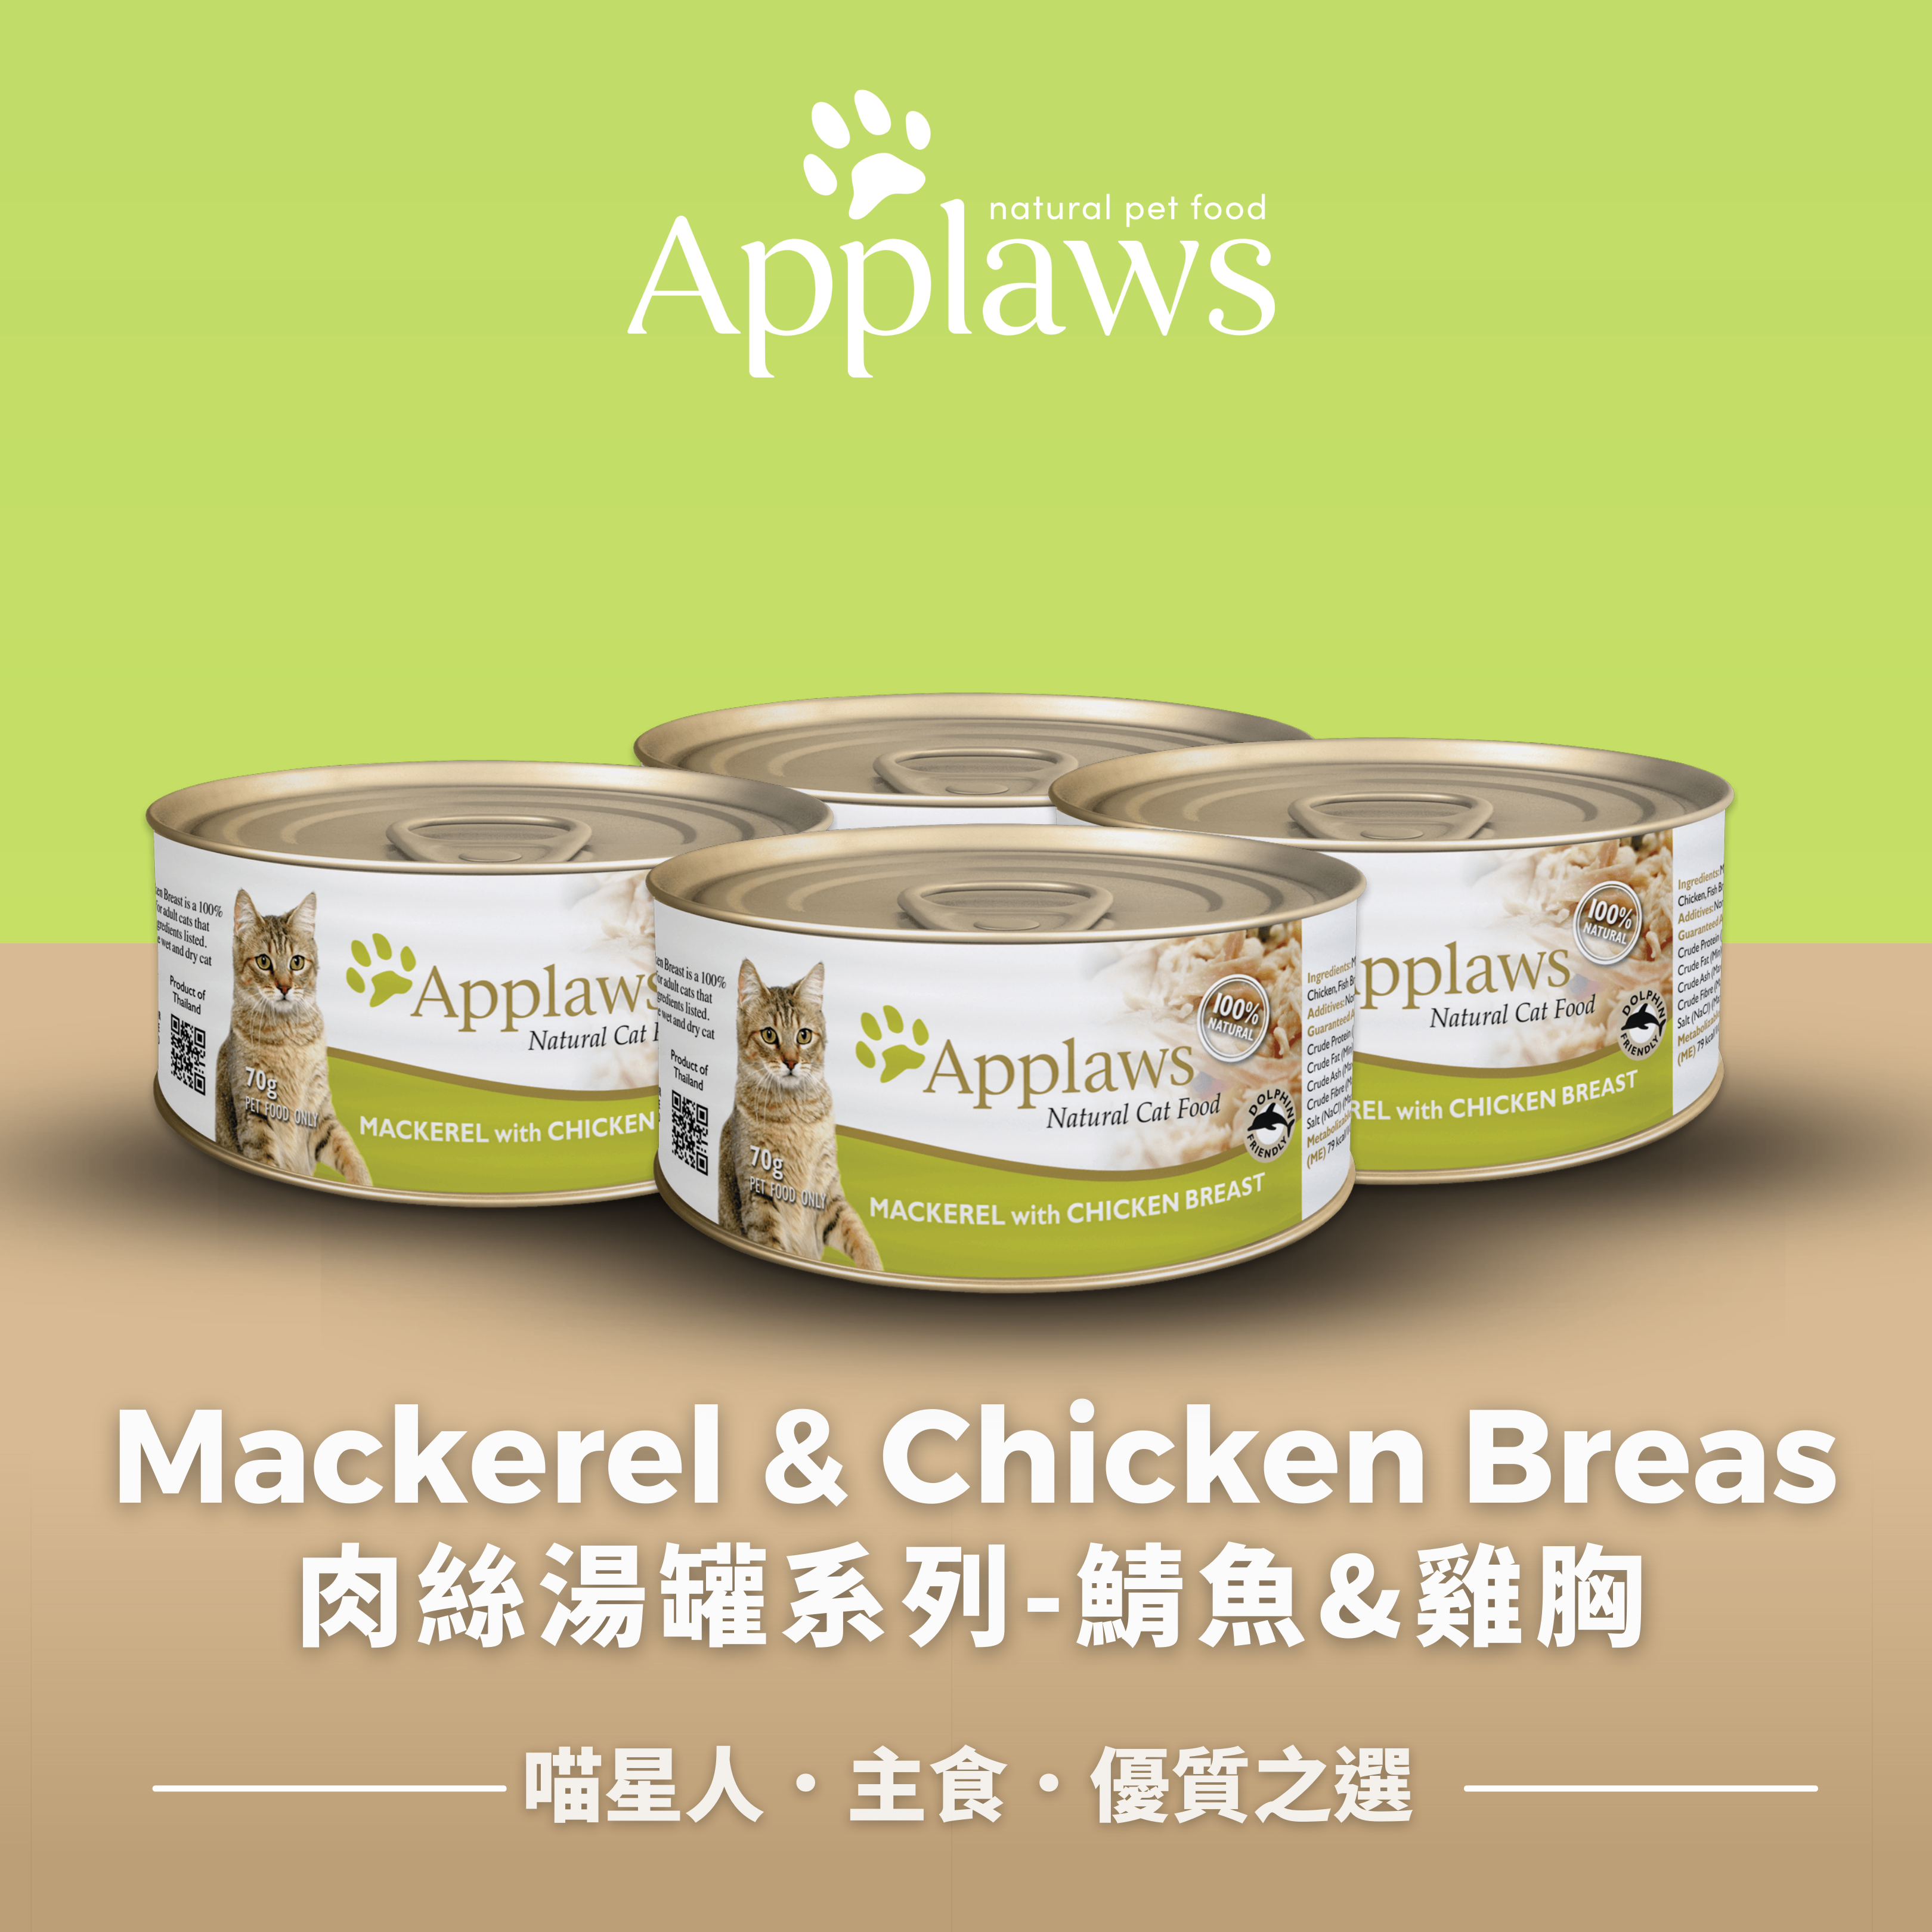 肉絲湯罐系列 – 鯖魚&雞胸  (6罐)  Broth Cat Tins – Mackerel&Chicken Breas in Broth